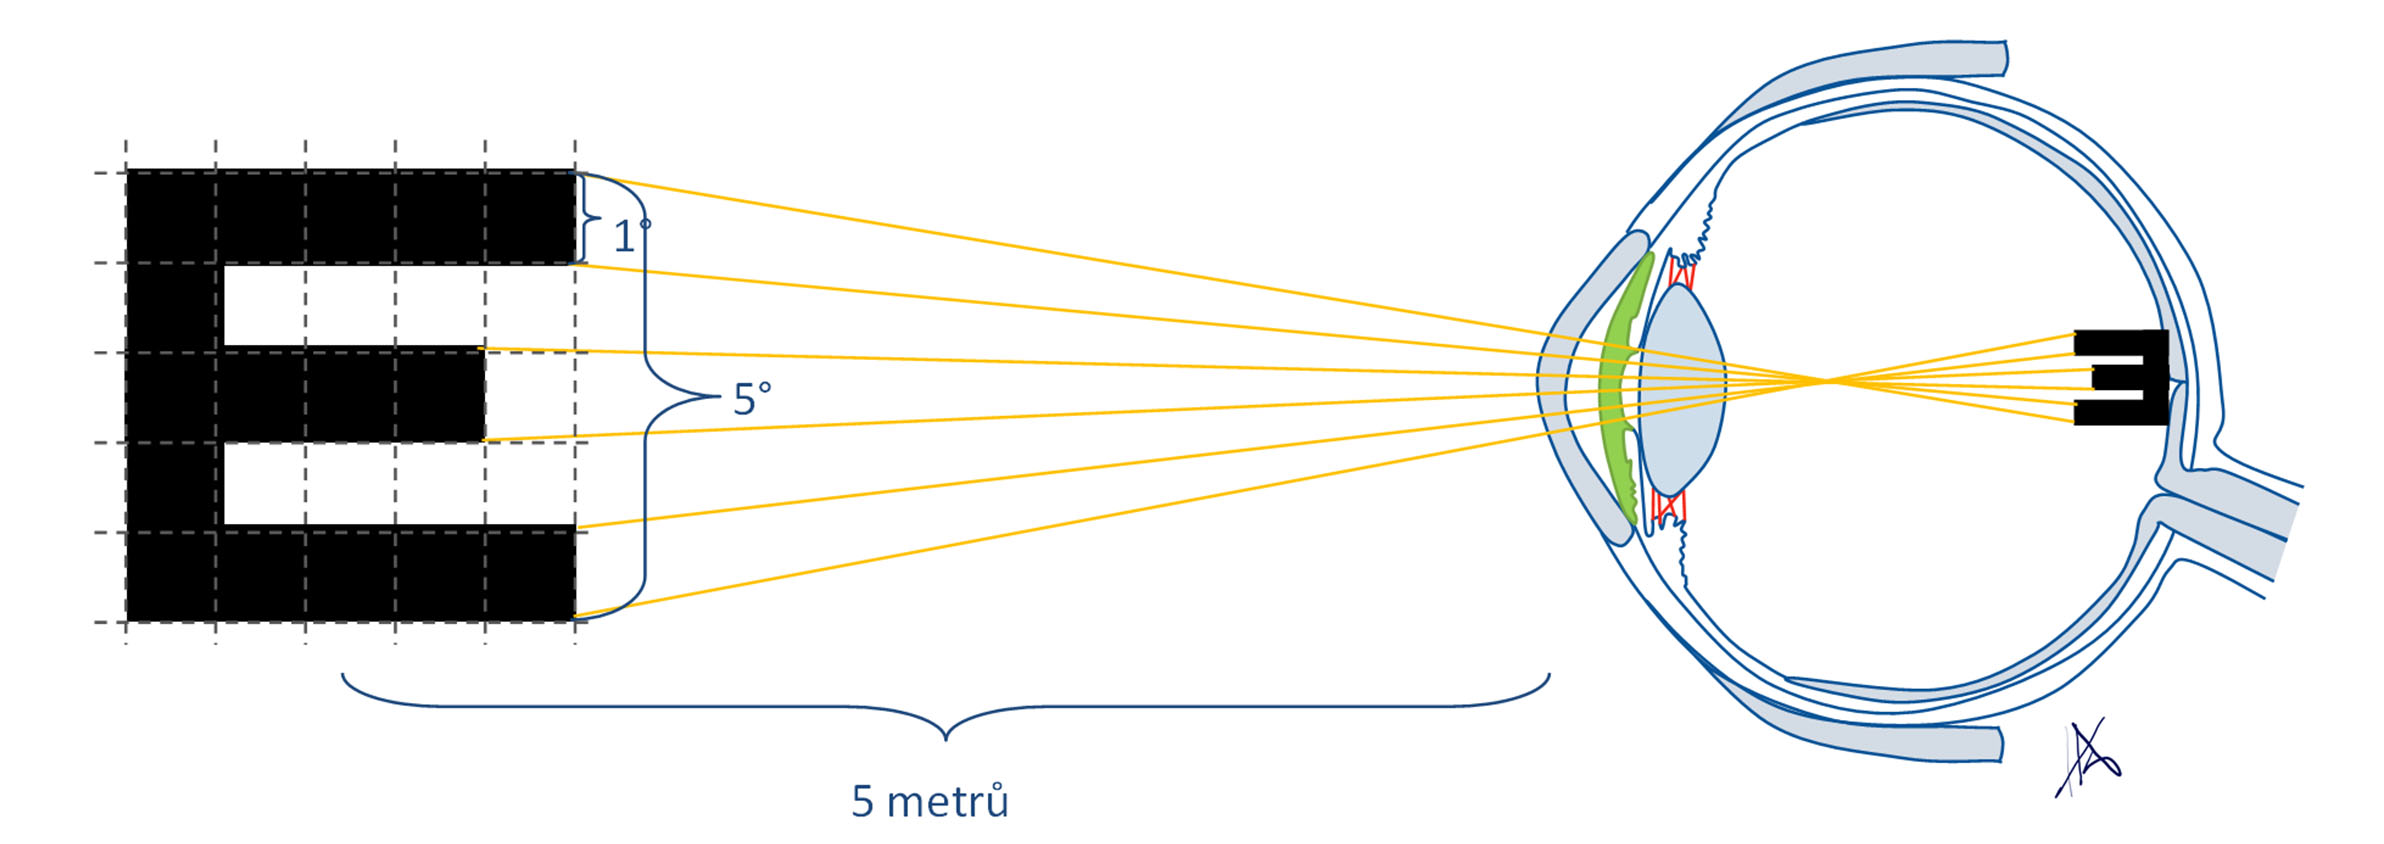 Princip vyšetření zrakové ostrosti pomocí Snellenových optotypů.